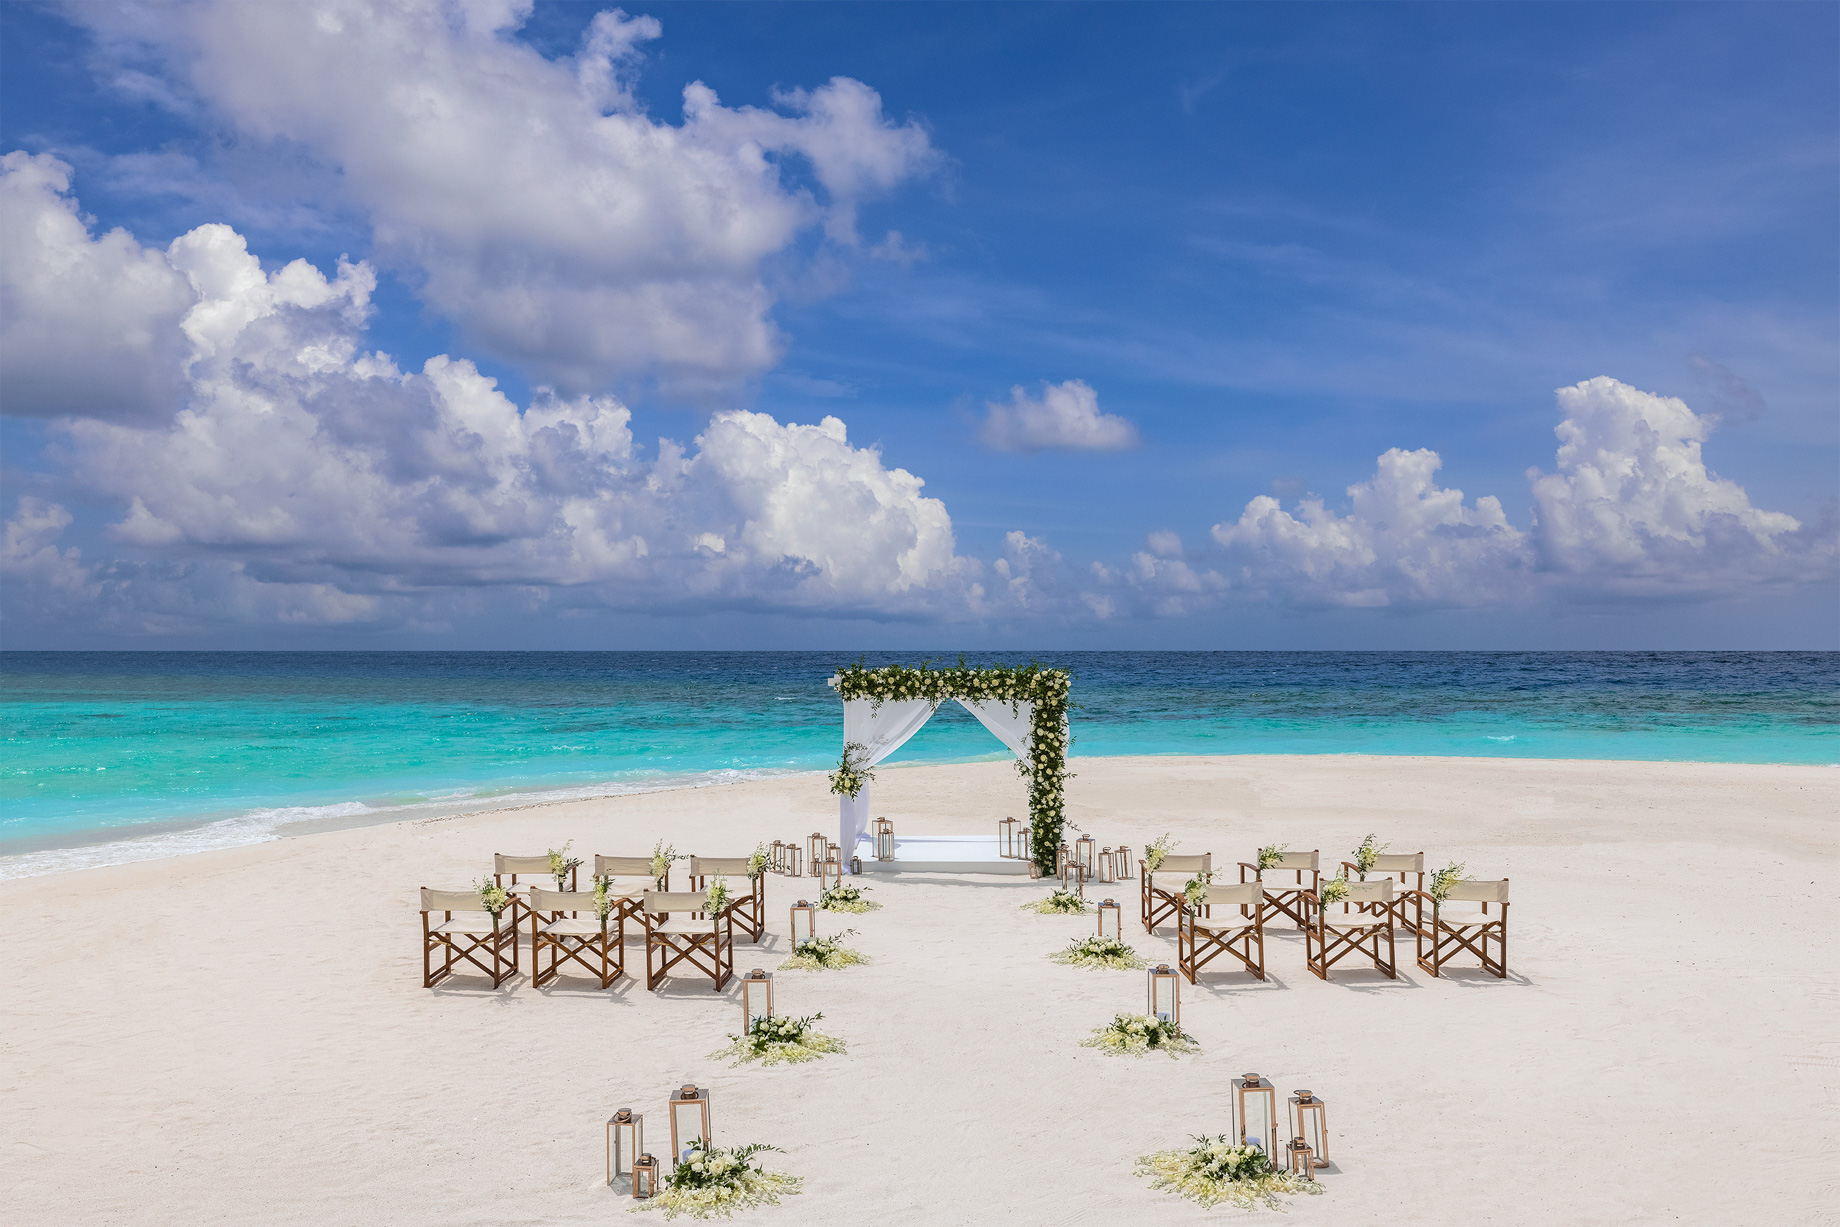 Anantara Kihavah Maldives Villas Resort - Baa Atoll, Maldives - Beach Wedding